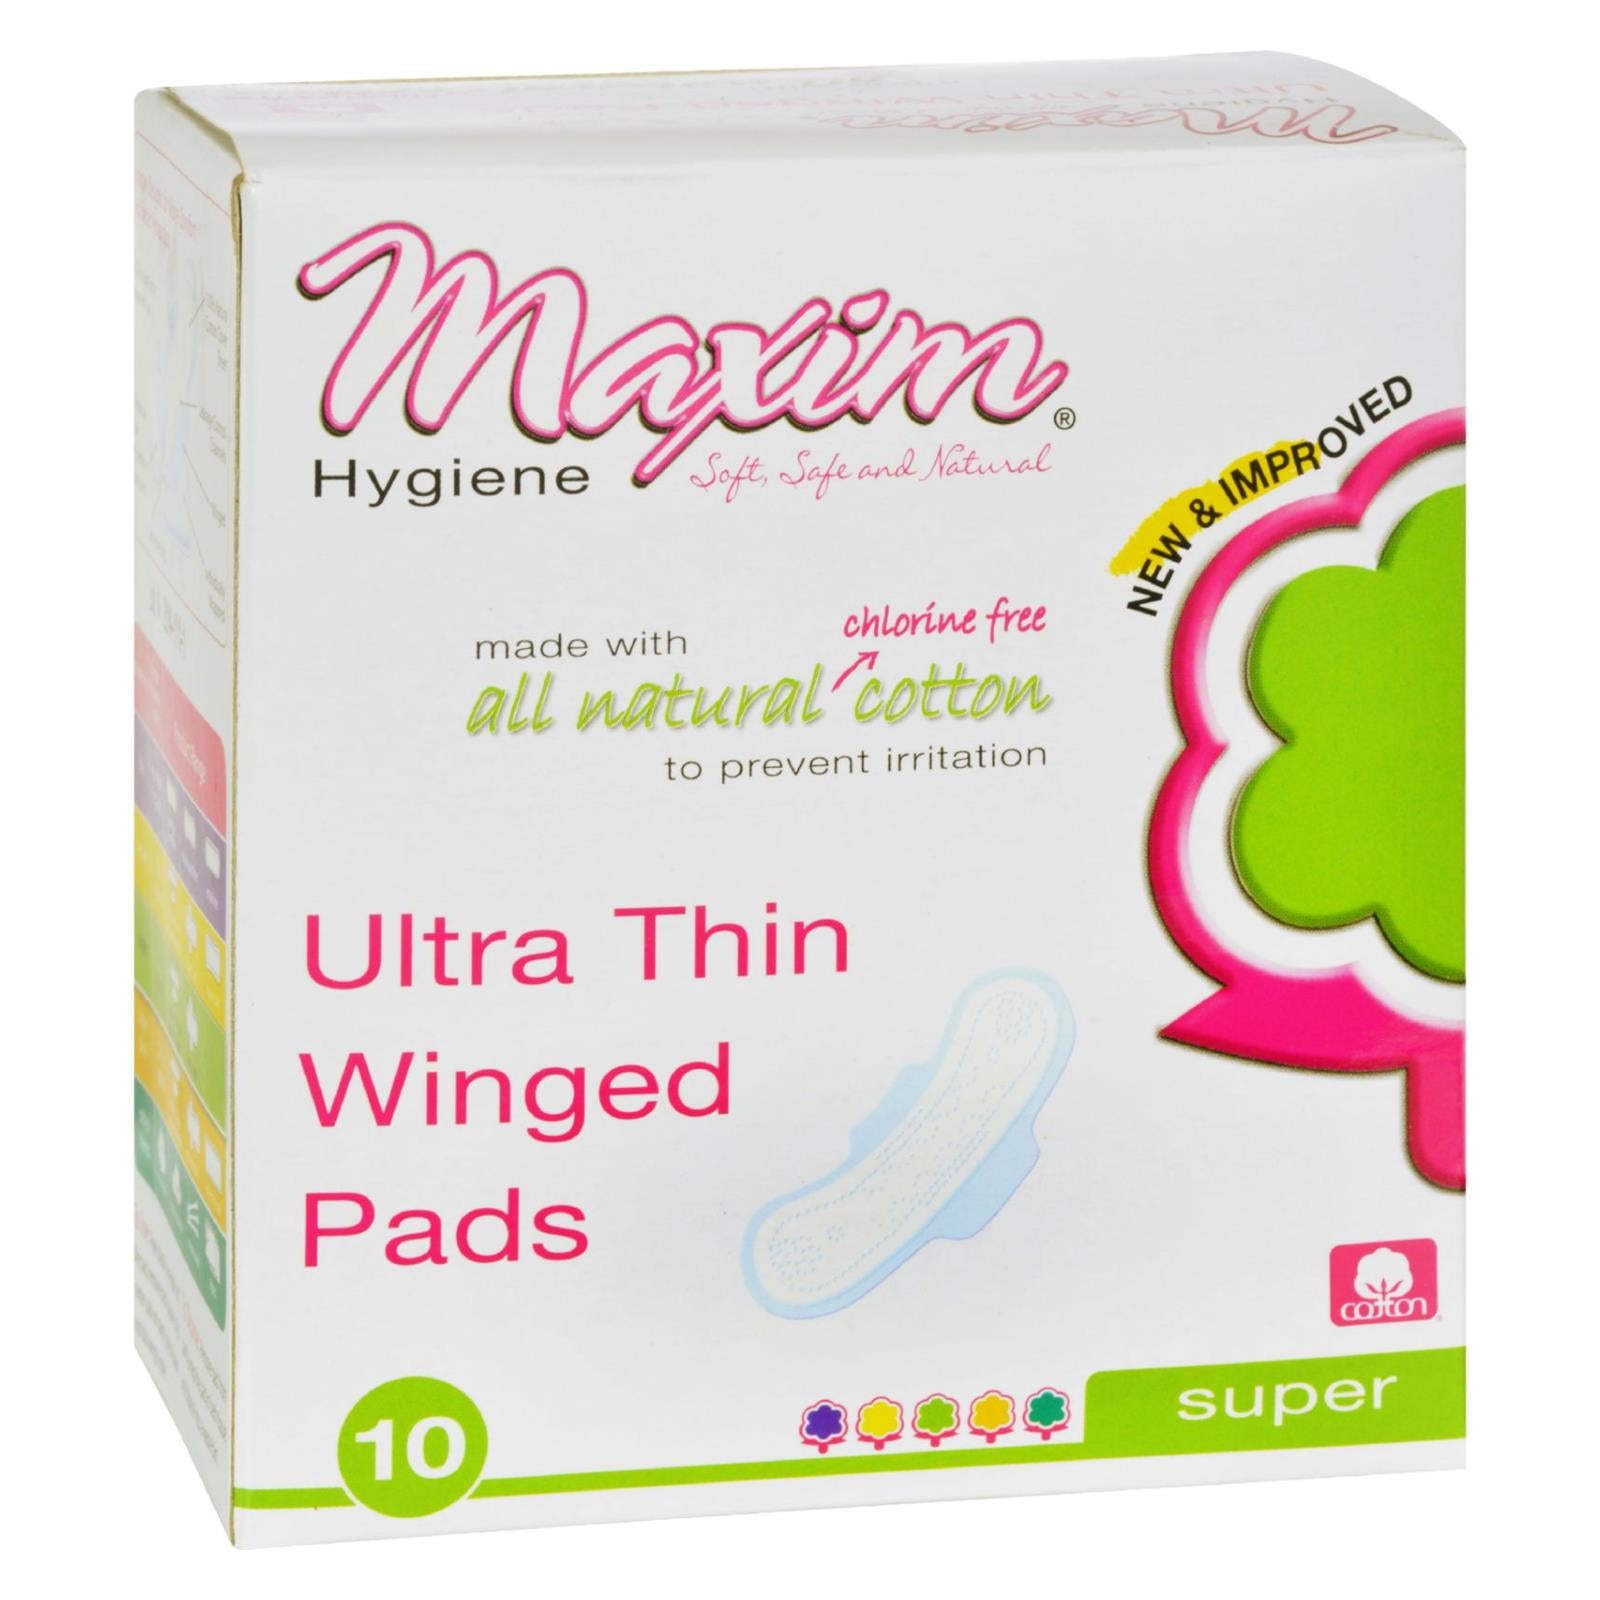 Maxim Hygiene Products, Maxim Hygiene Serviettes hygiéniques à ailettes en coton naturel ultra-mince pour la nuit - 10 serviettes